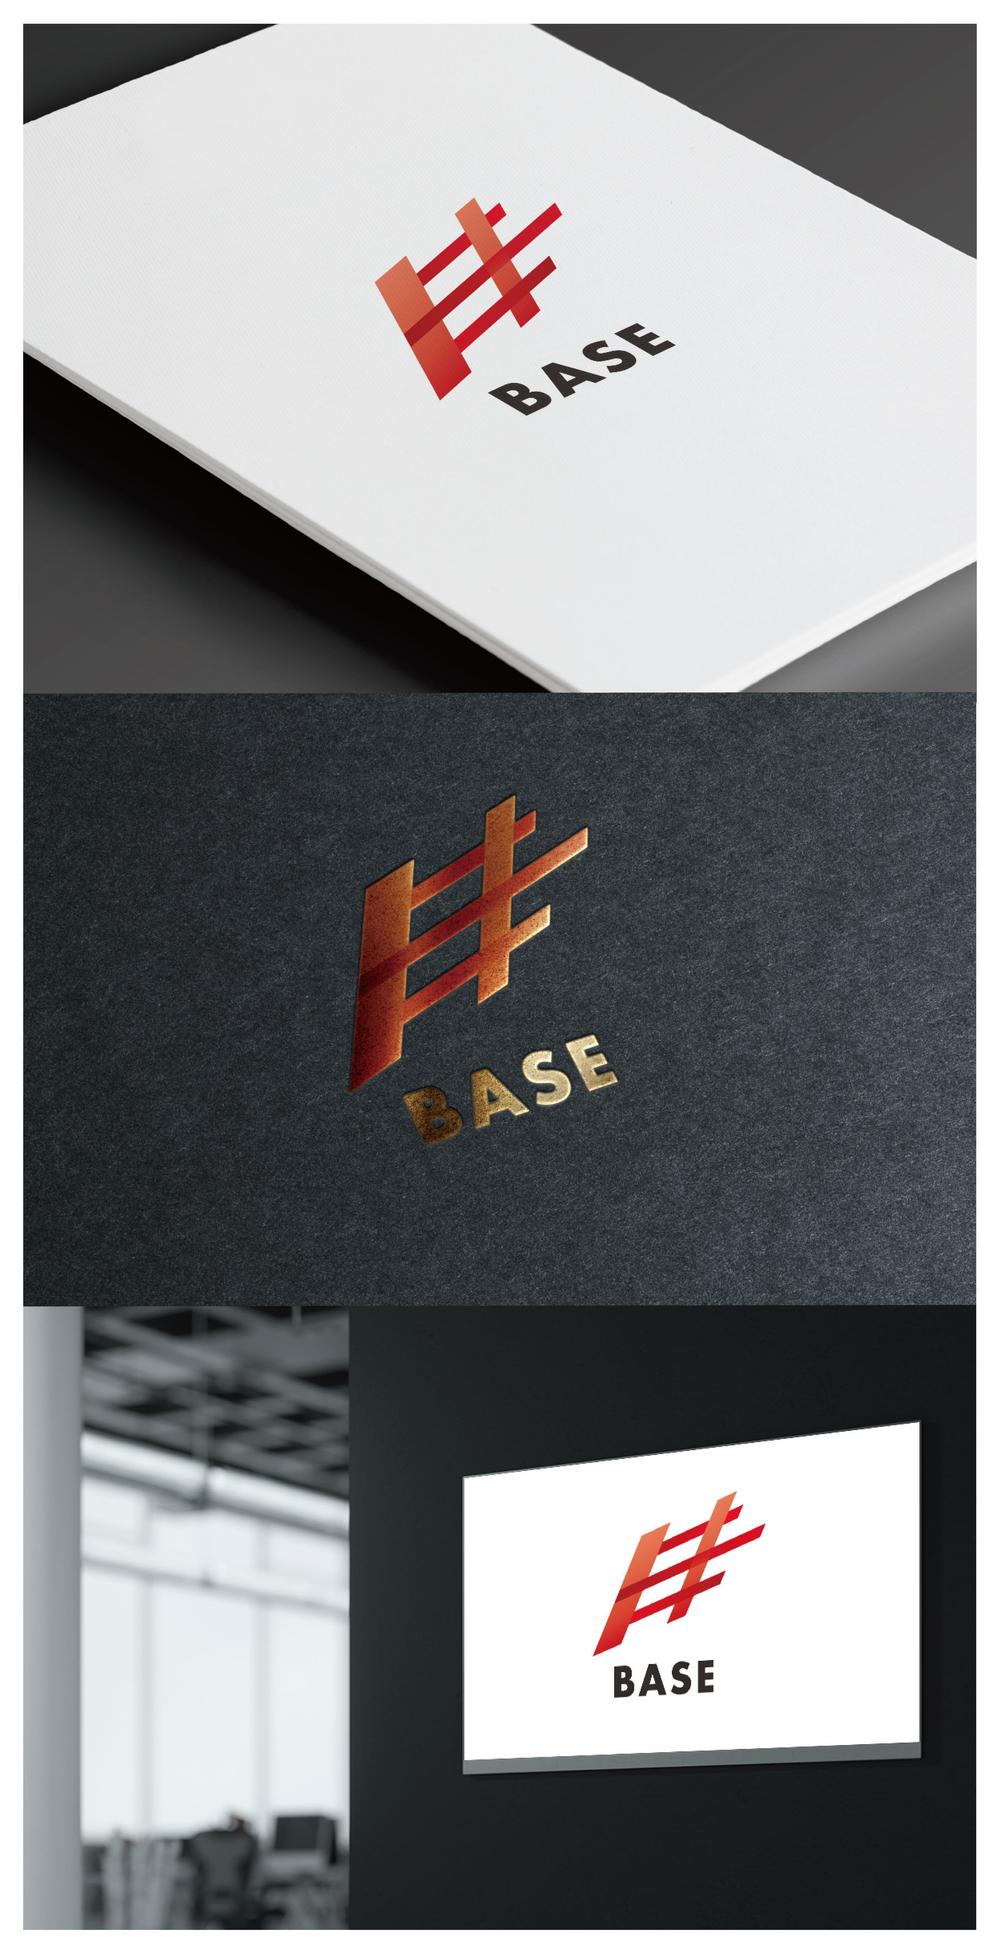 BASE_logo01_01.jpg